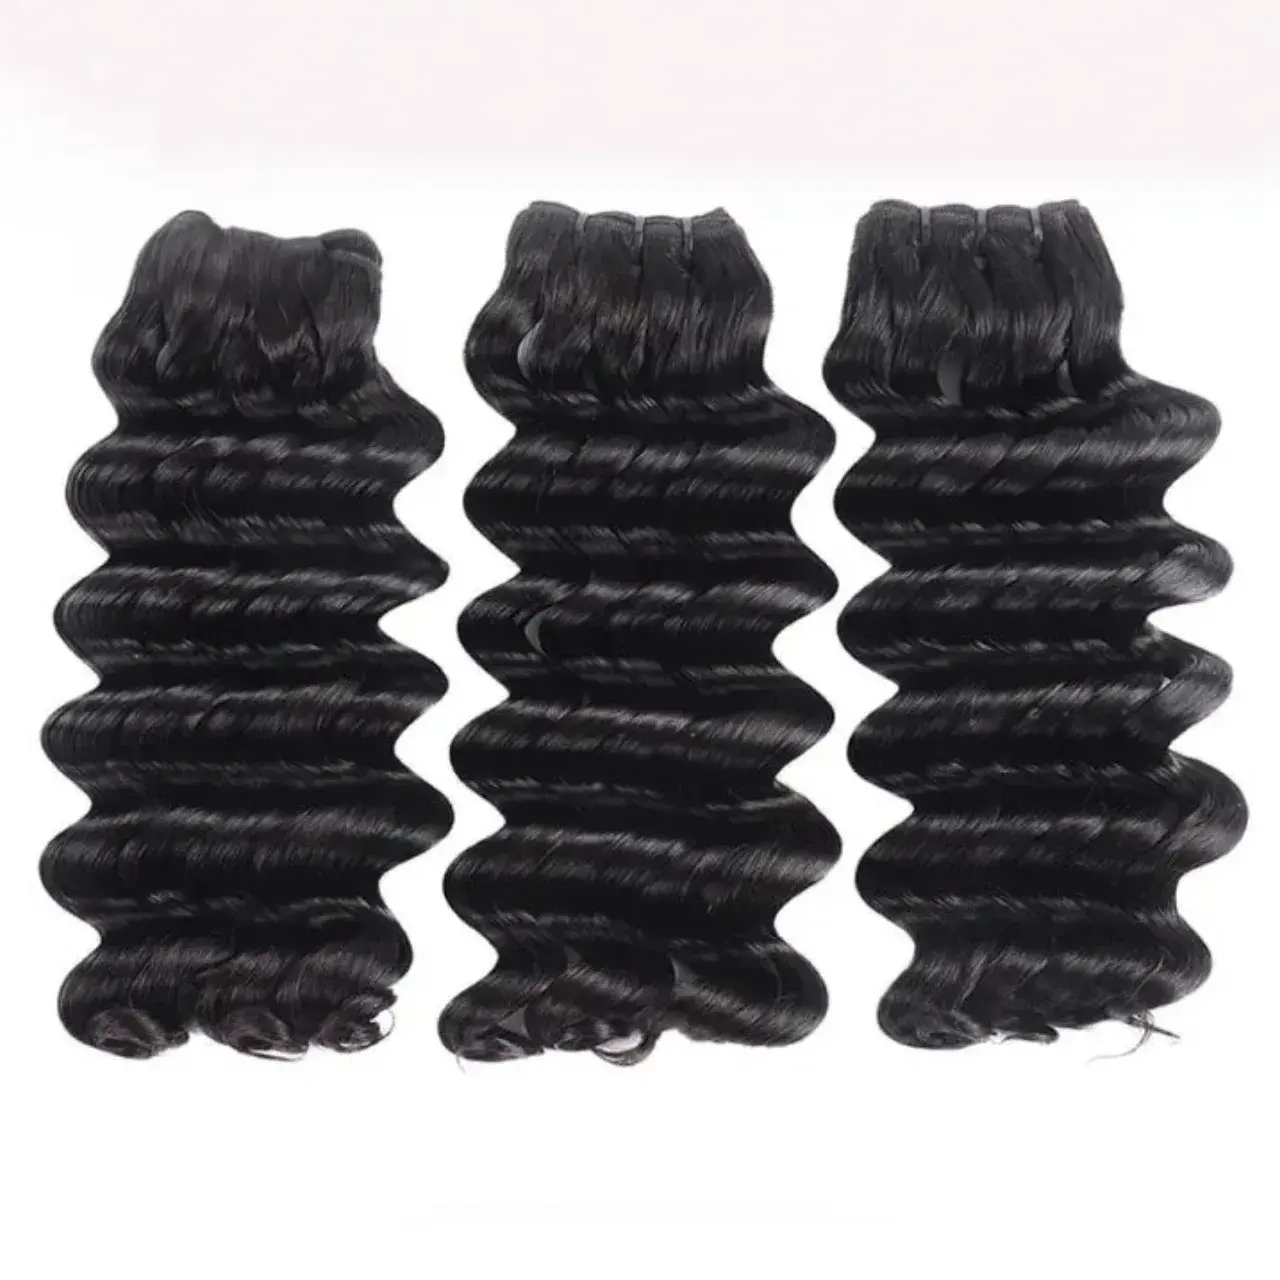 Volumen de stock de clientes en todo el mundo, la mejor alta calidad con cabello crudo Tejido de cabello de lujo con ondas profundas